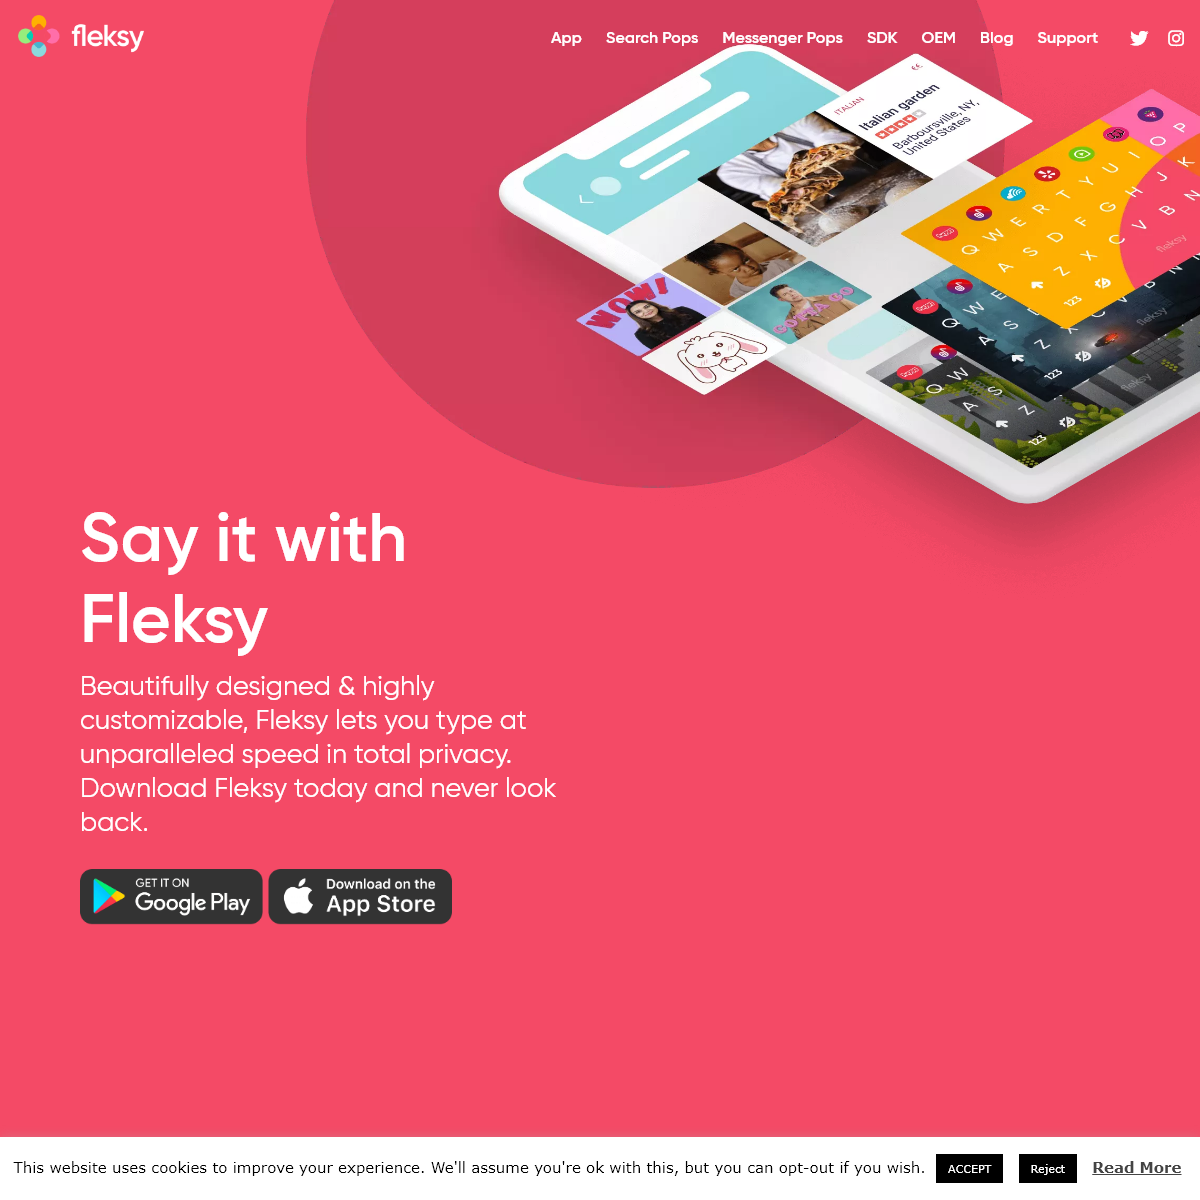 A complete backup of fleksy.com